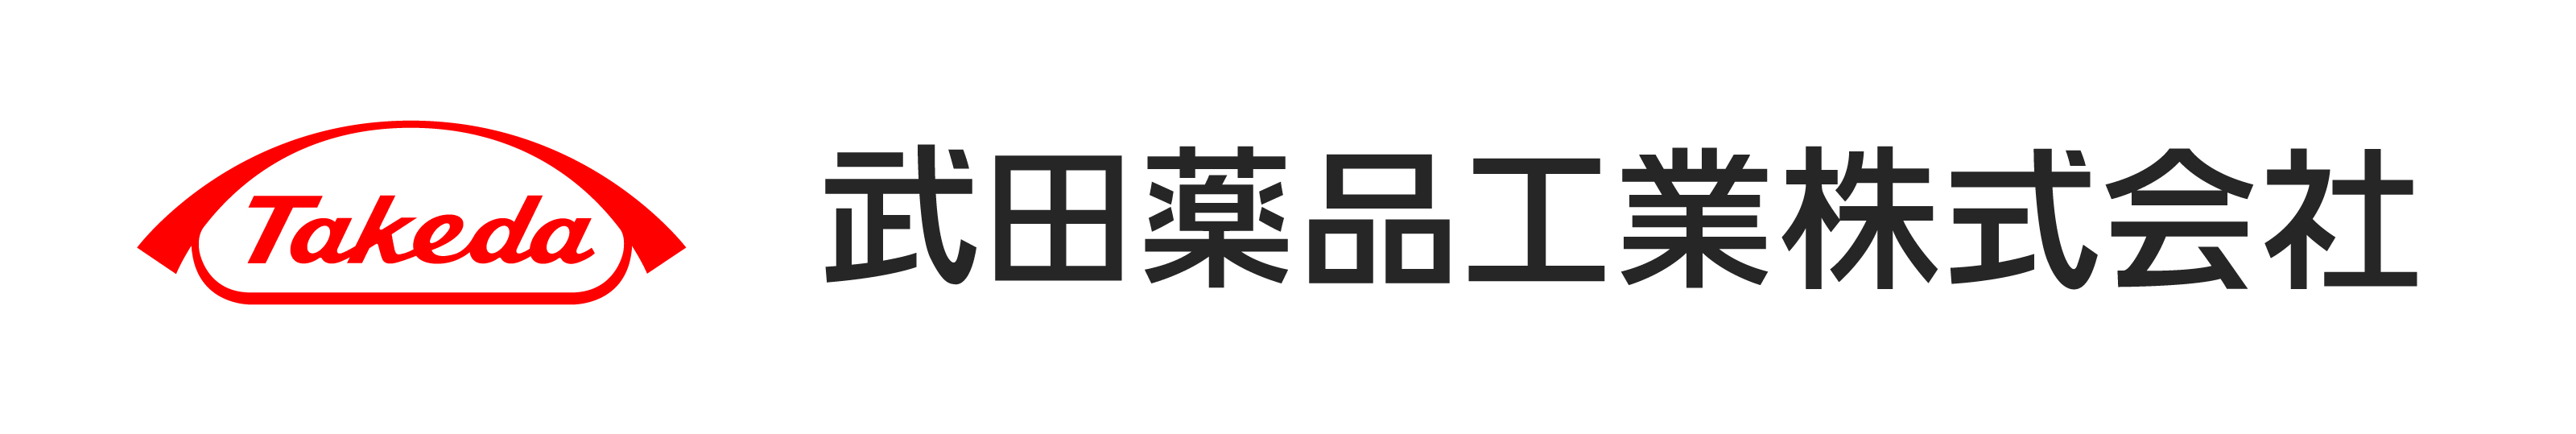 05_武田薬品工業株式会社